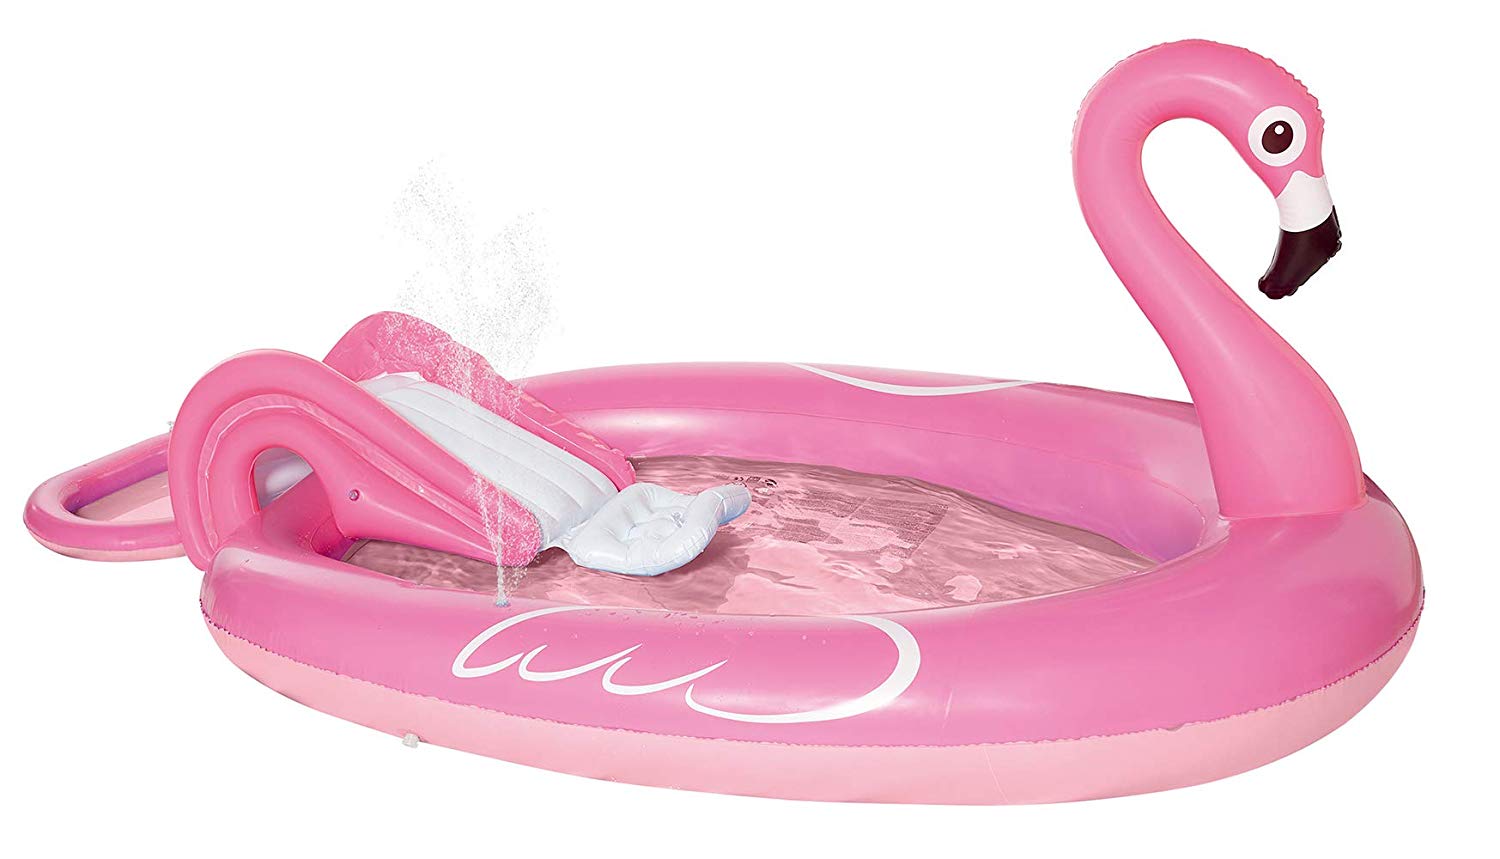 Best Inflatable Kiddie Summer Pool